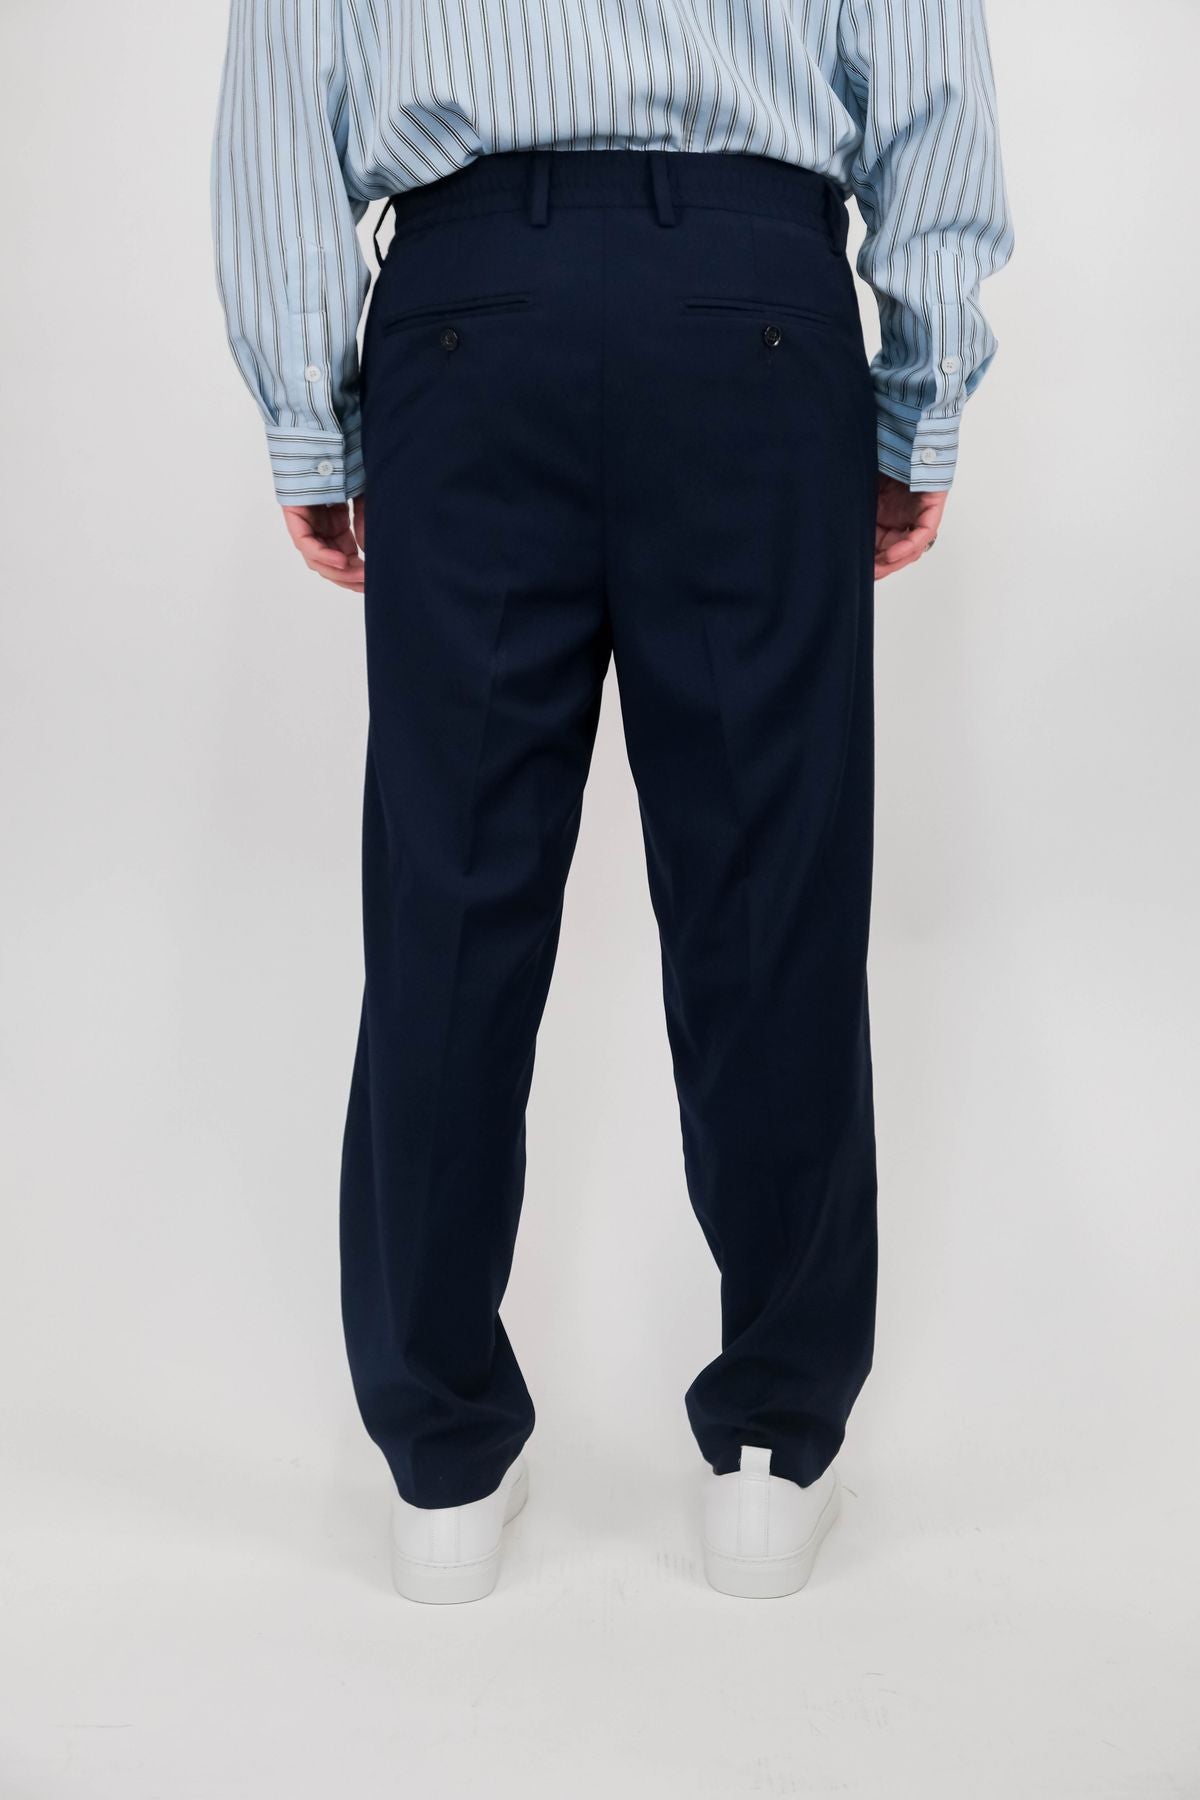 Pantaloni C.9.3